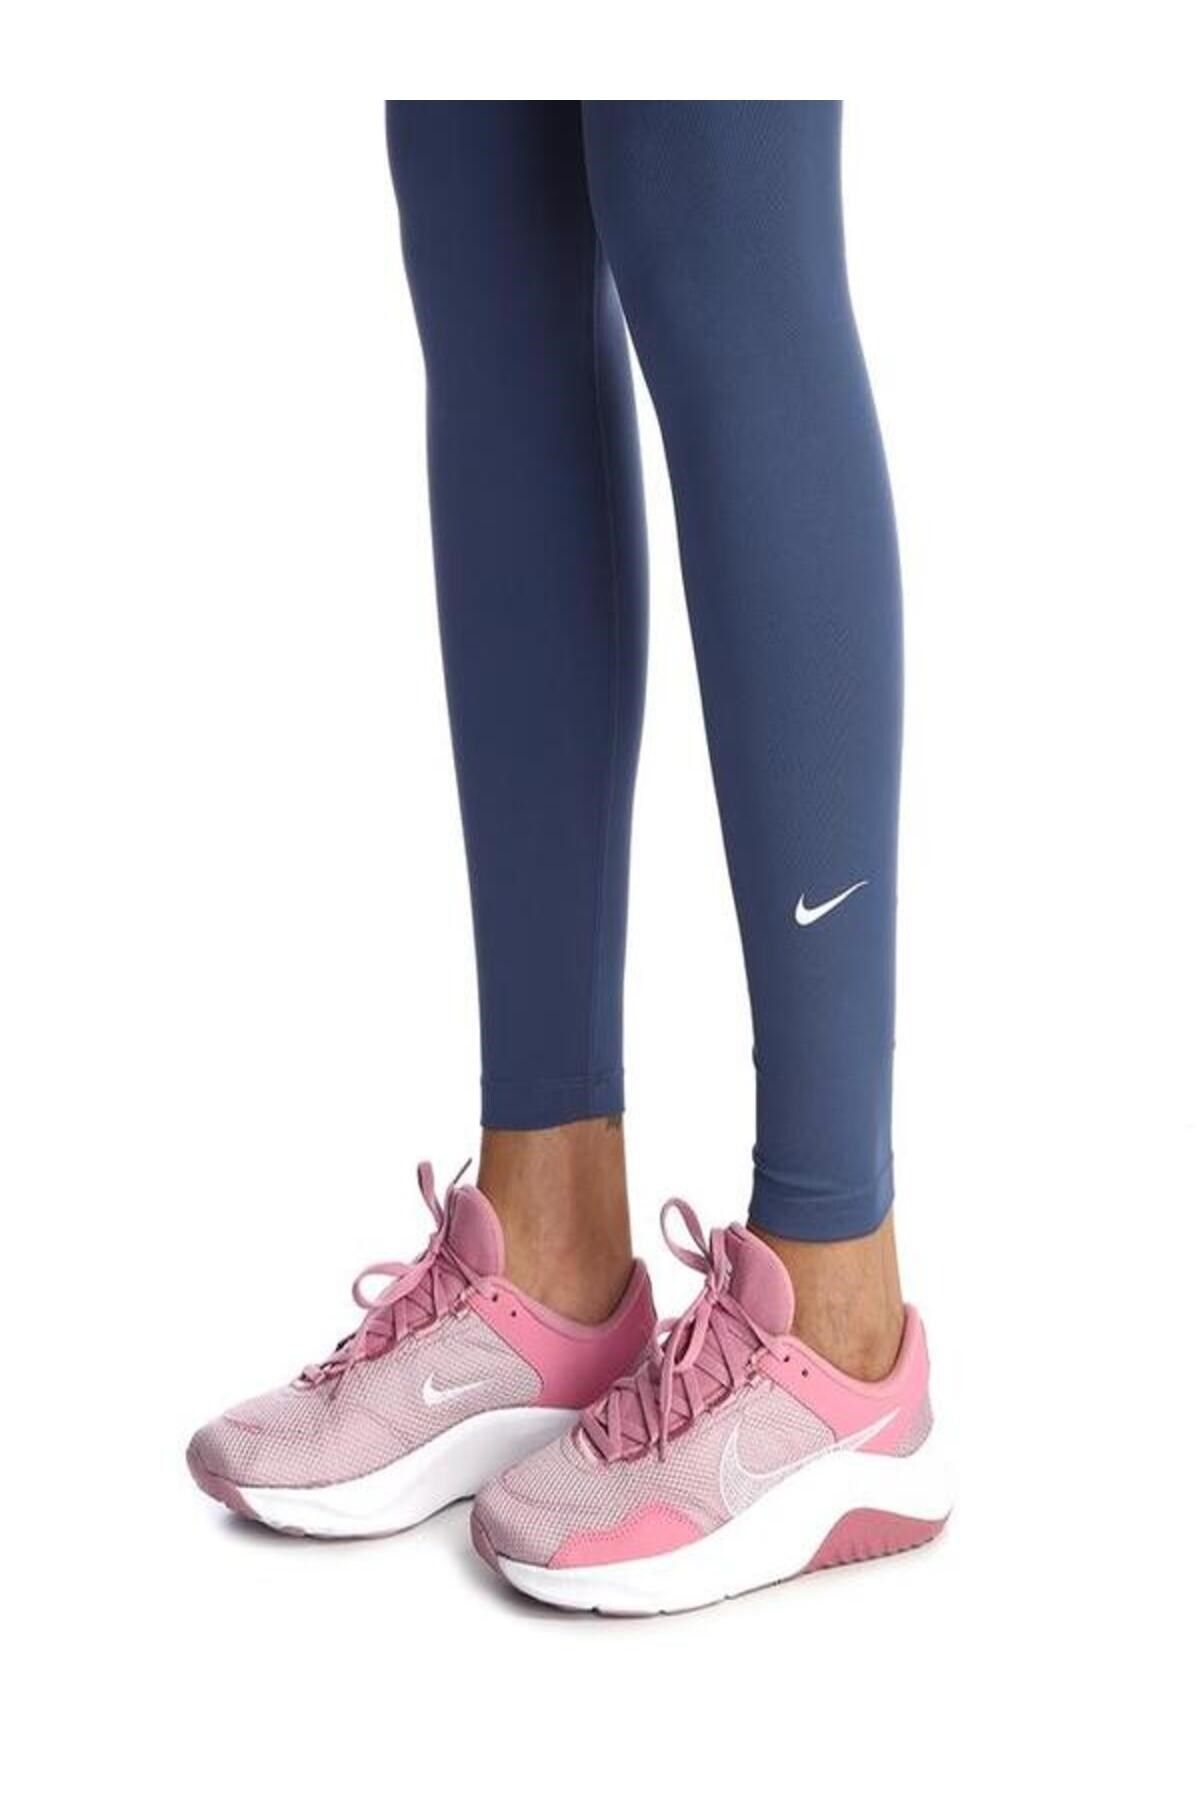 Nike Walking Shoes - Pink - Wedge